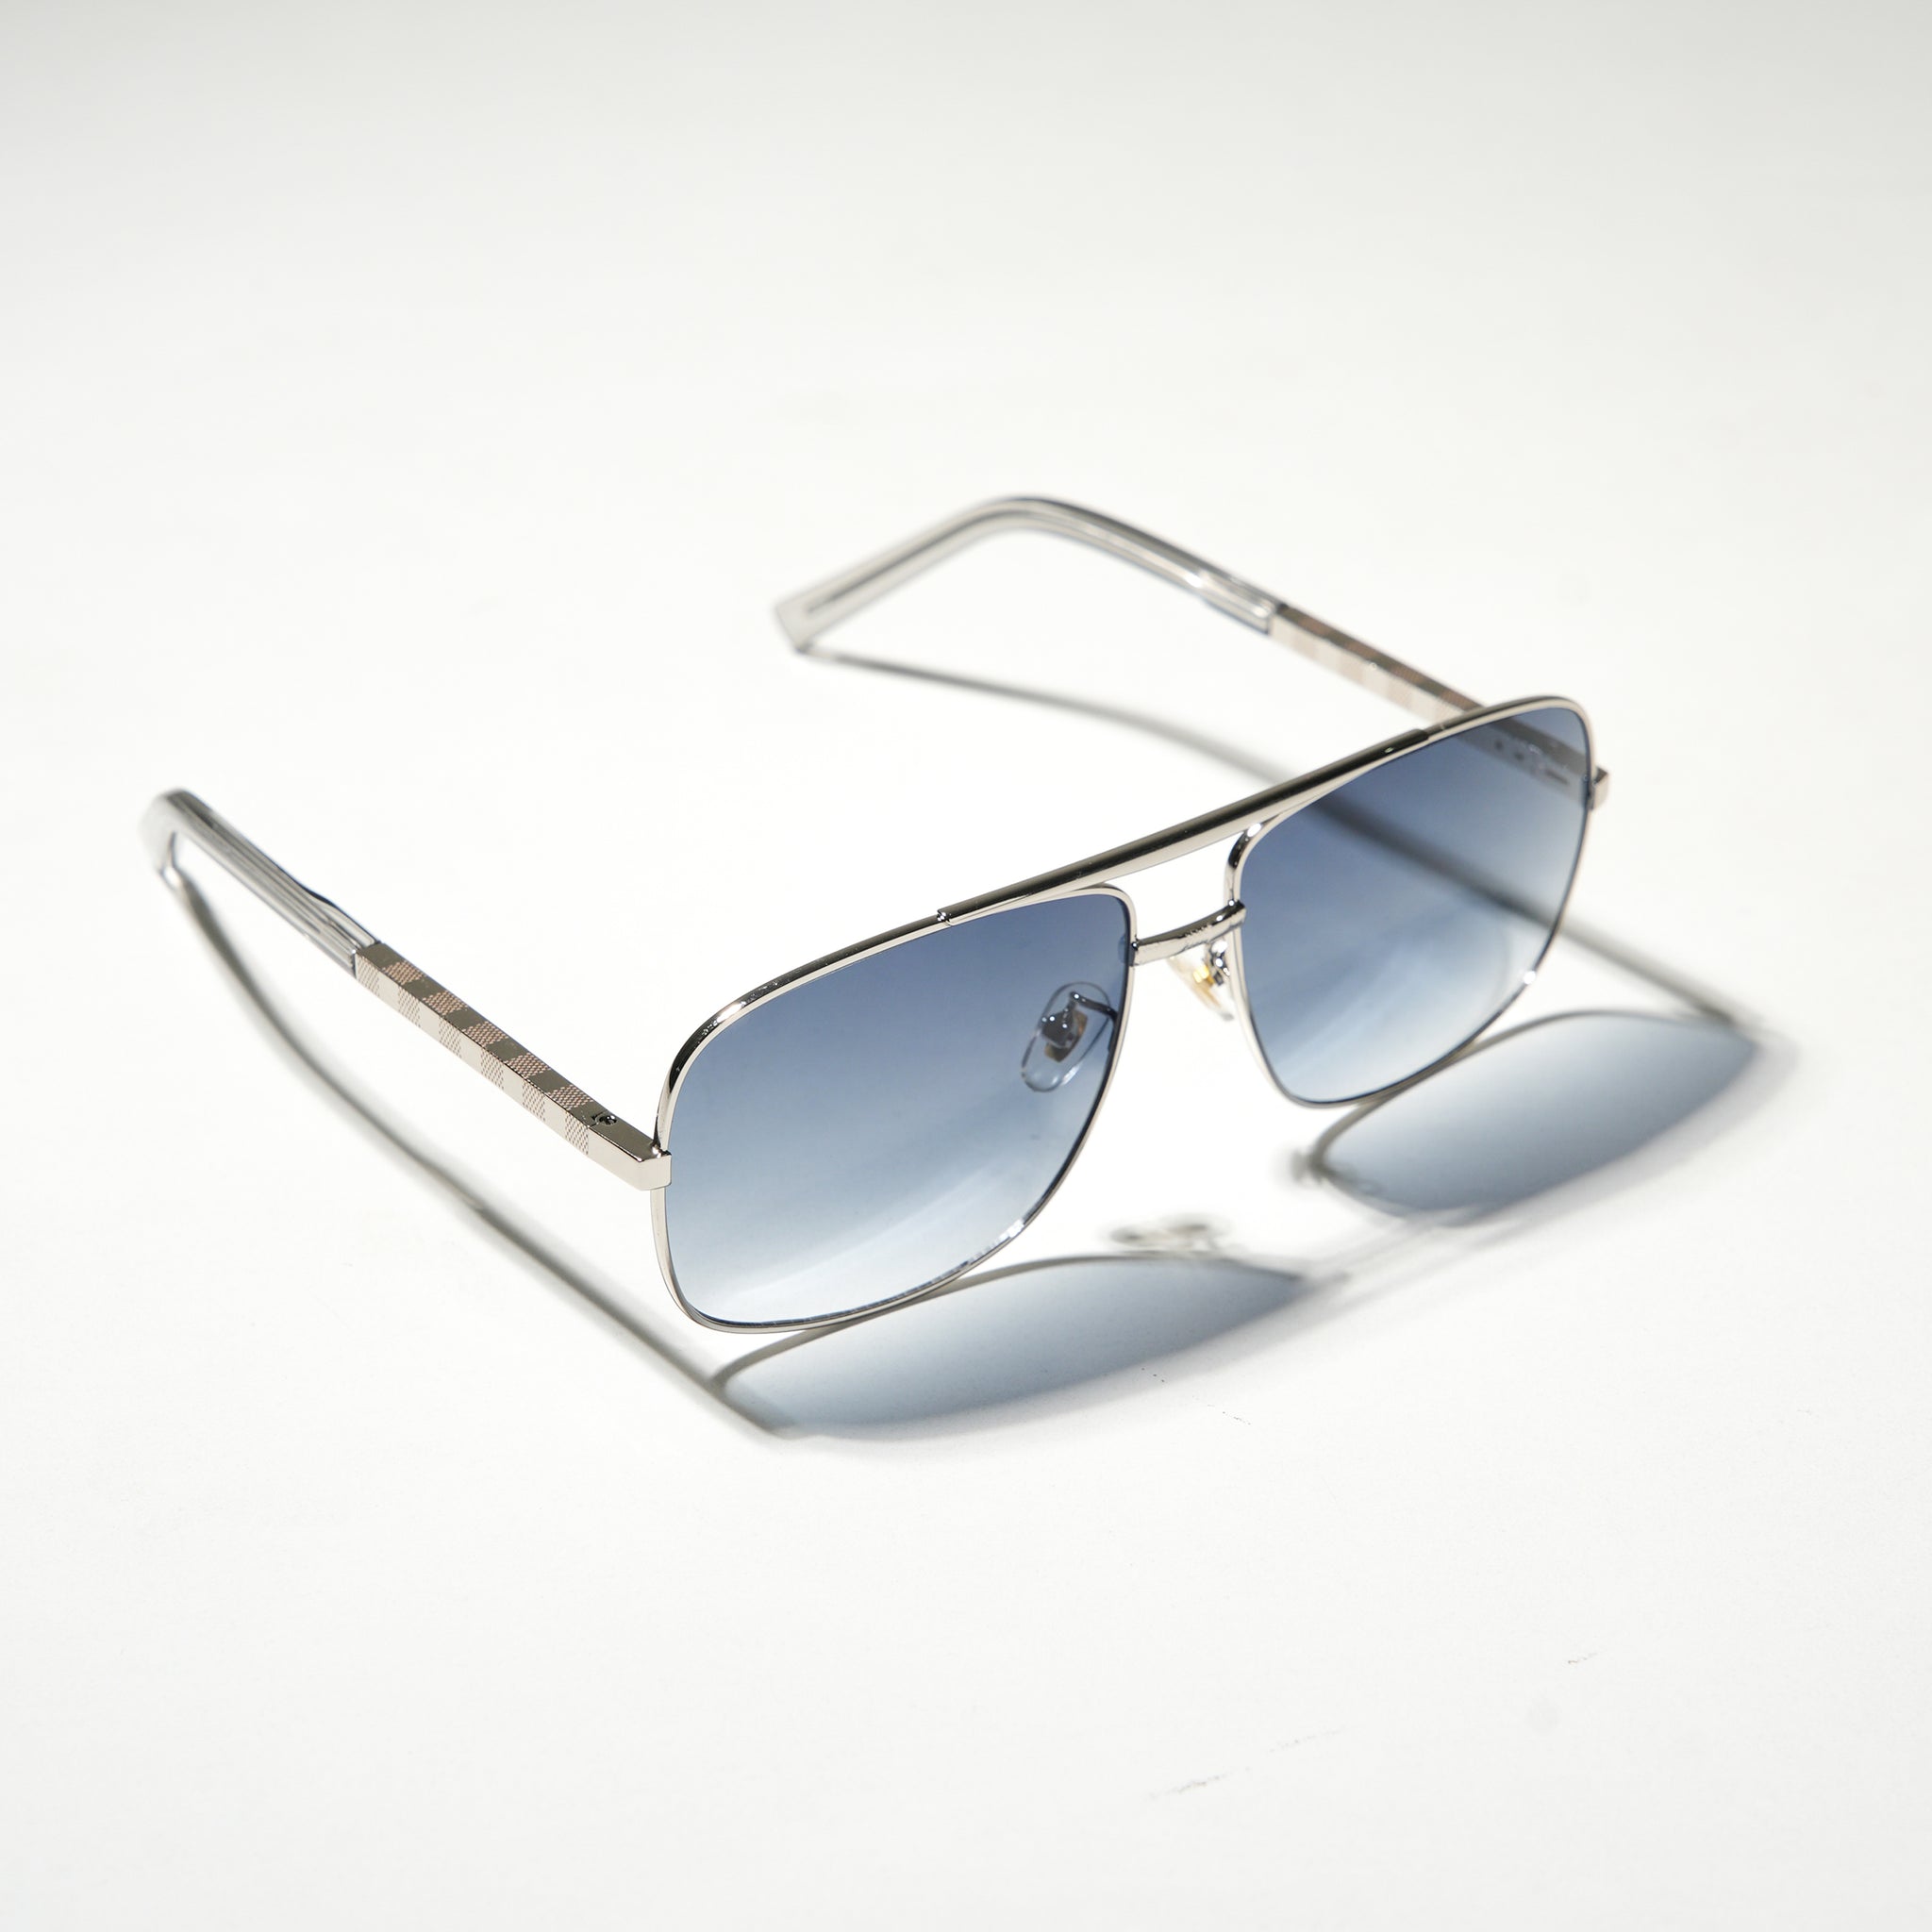 Chokore Retro Double Bridge Sunglasses with UV400 Protection (Blue & Silver)